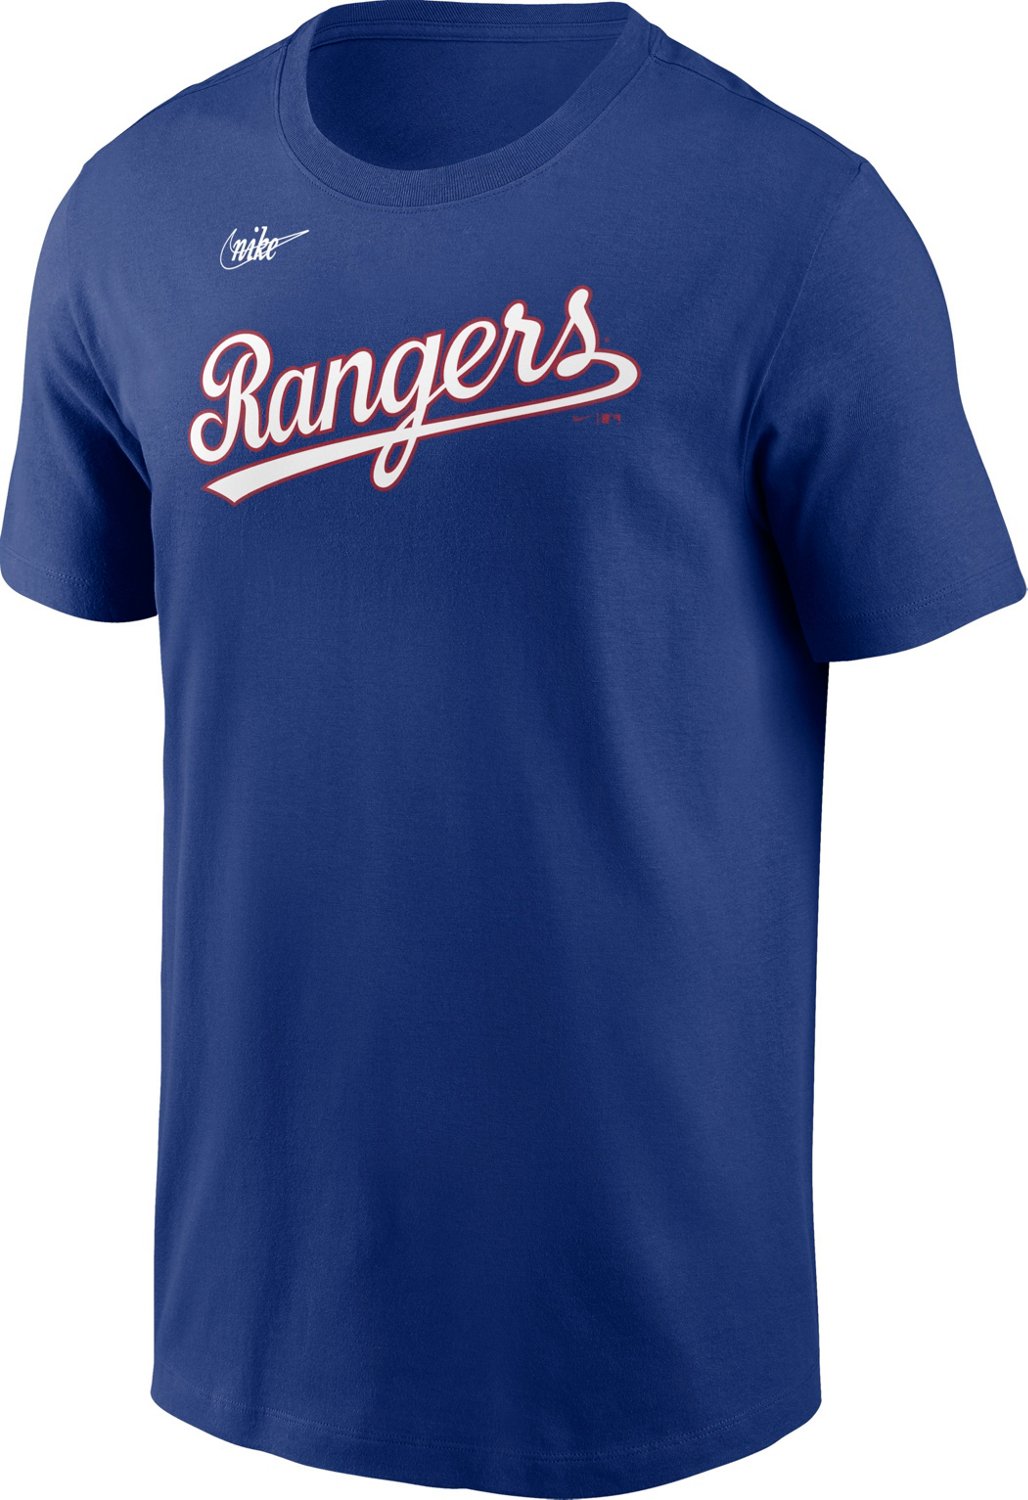 Nike Men's Texas Rangers Cooperstown Wordmark Graphic T-shirt